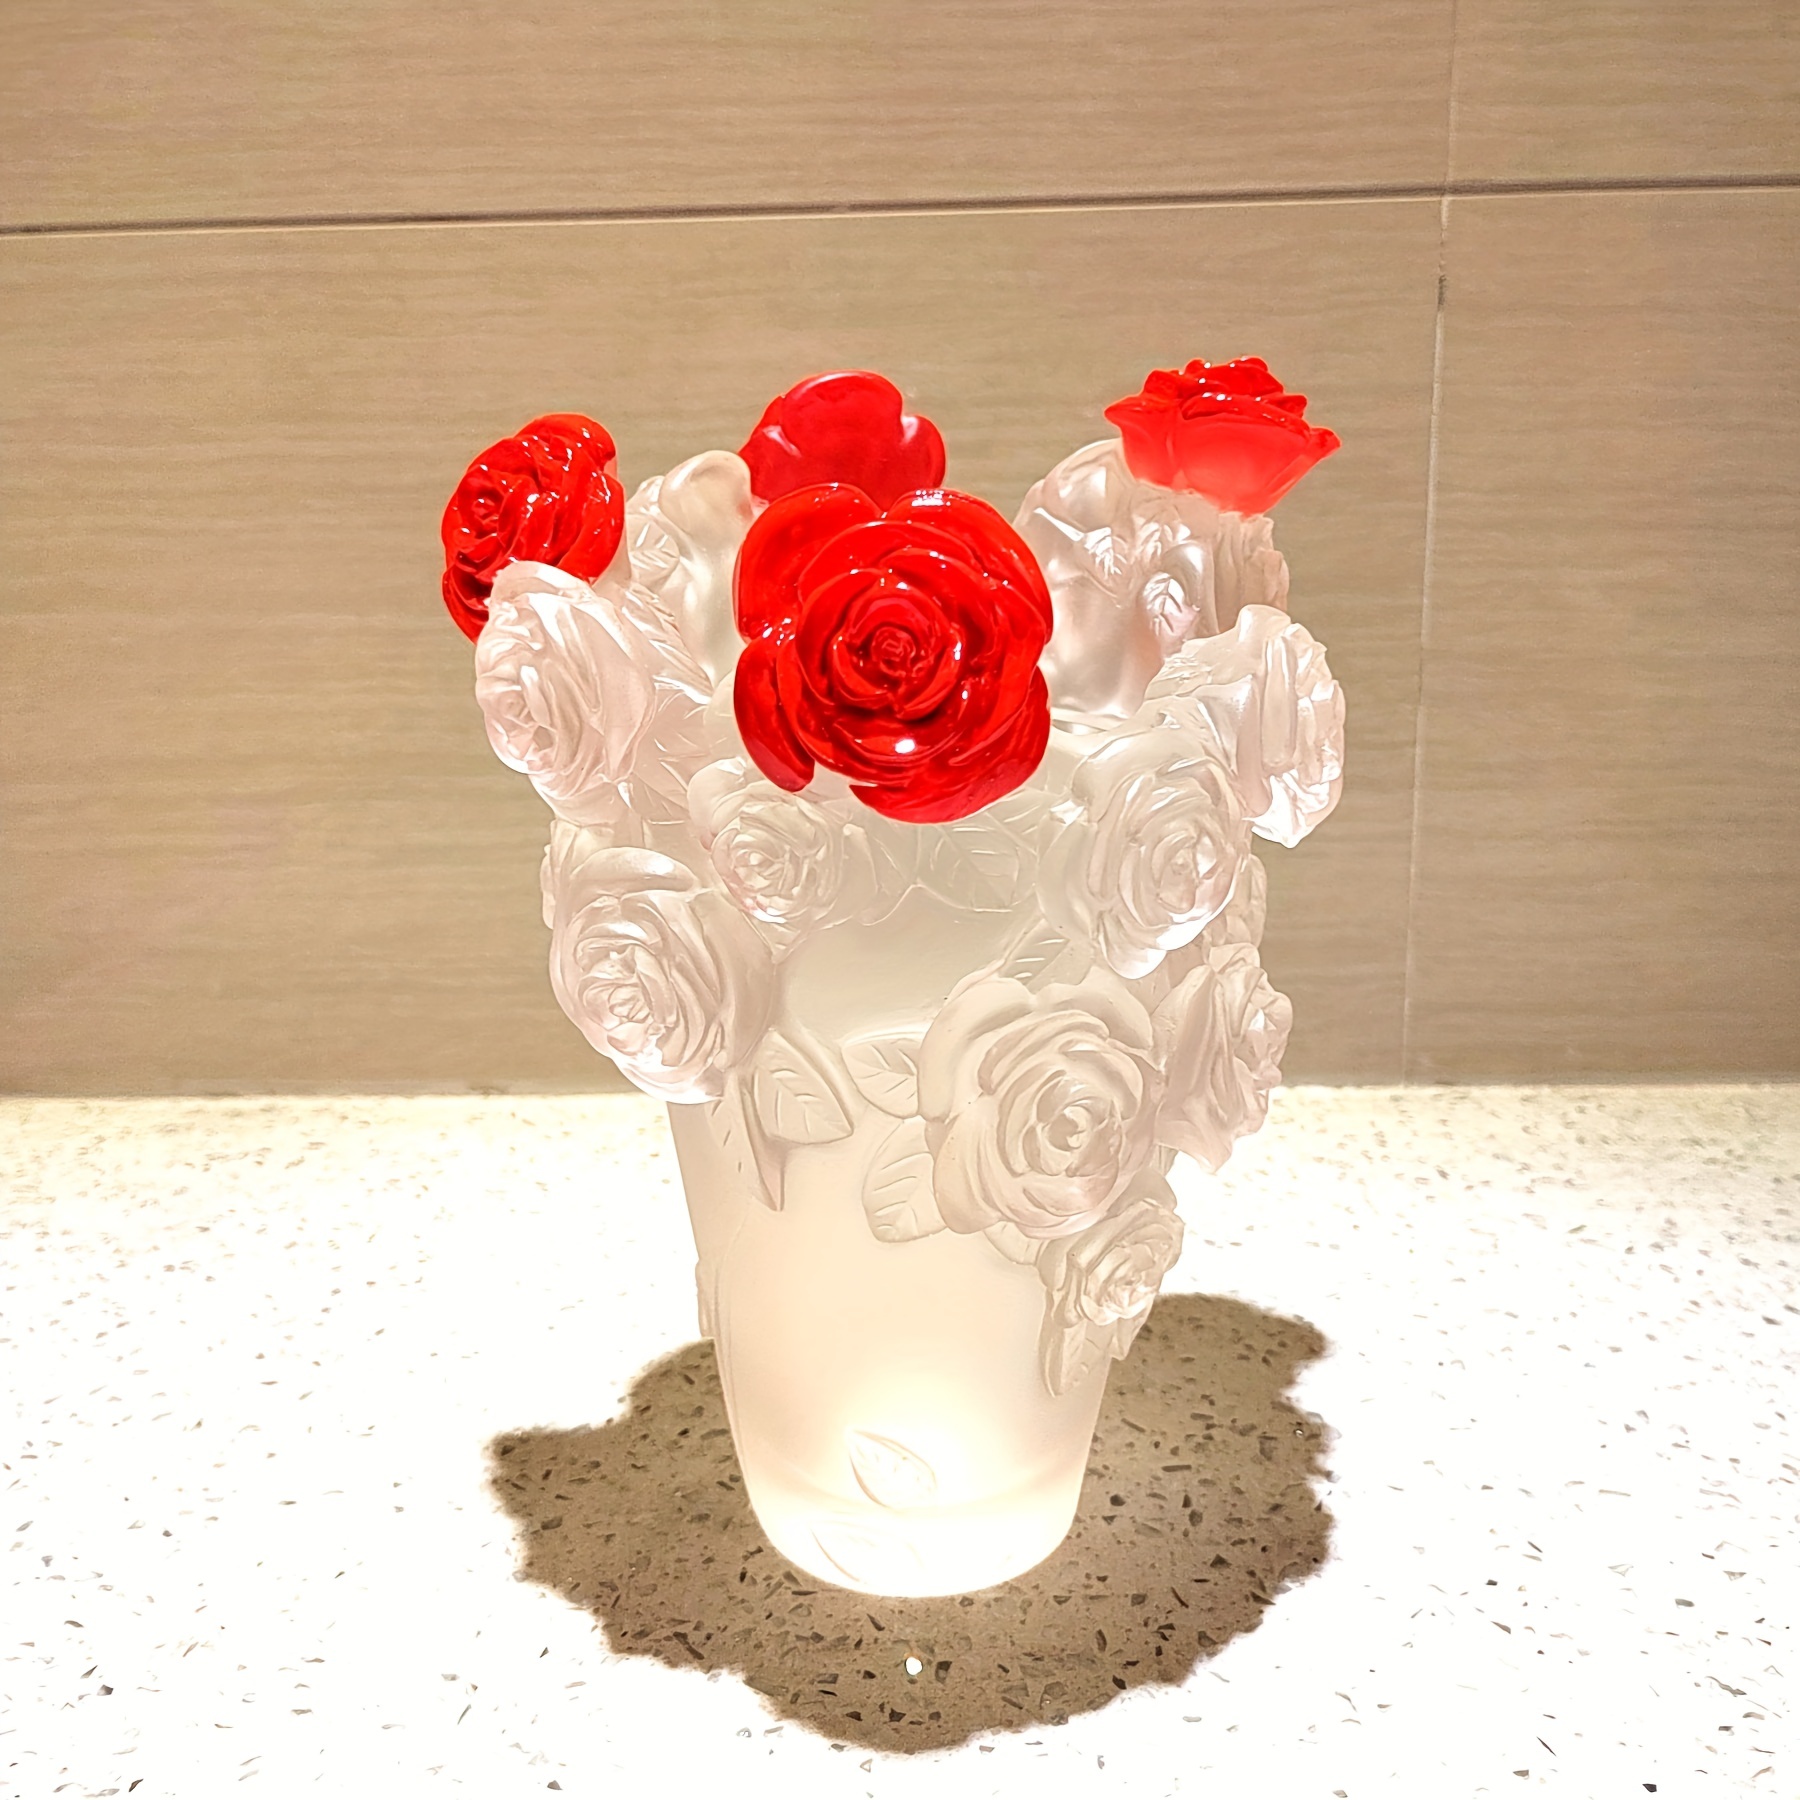 Decorazioni per la casa vaso di vetro vaso di fiori di cristallo decorazioni  per la stanza